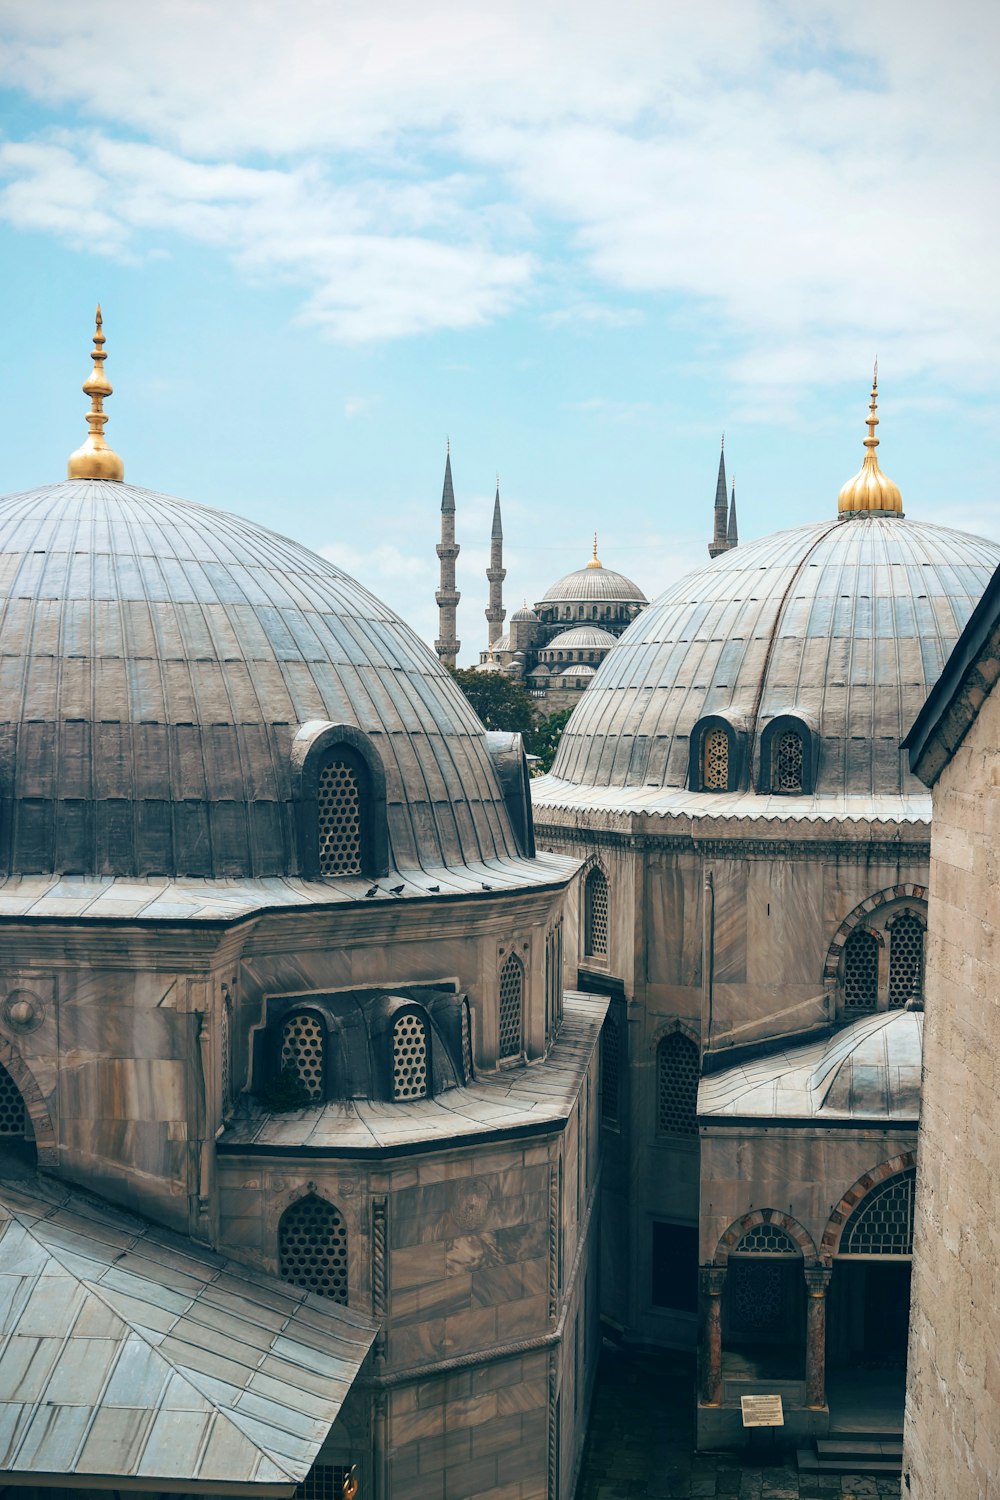 Photographie de bâtiments de mosquées